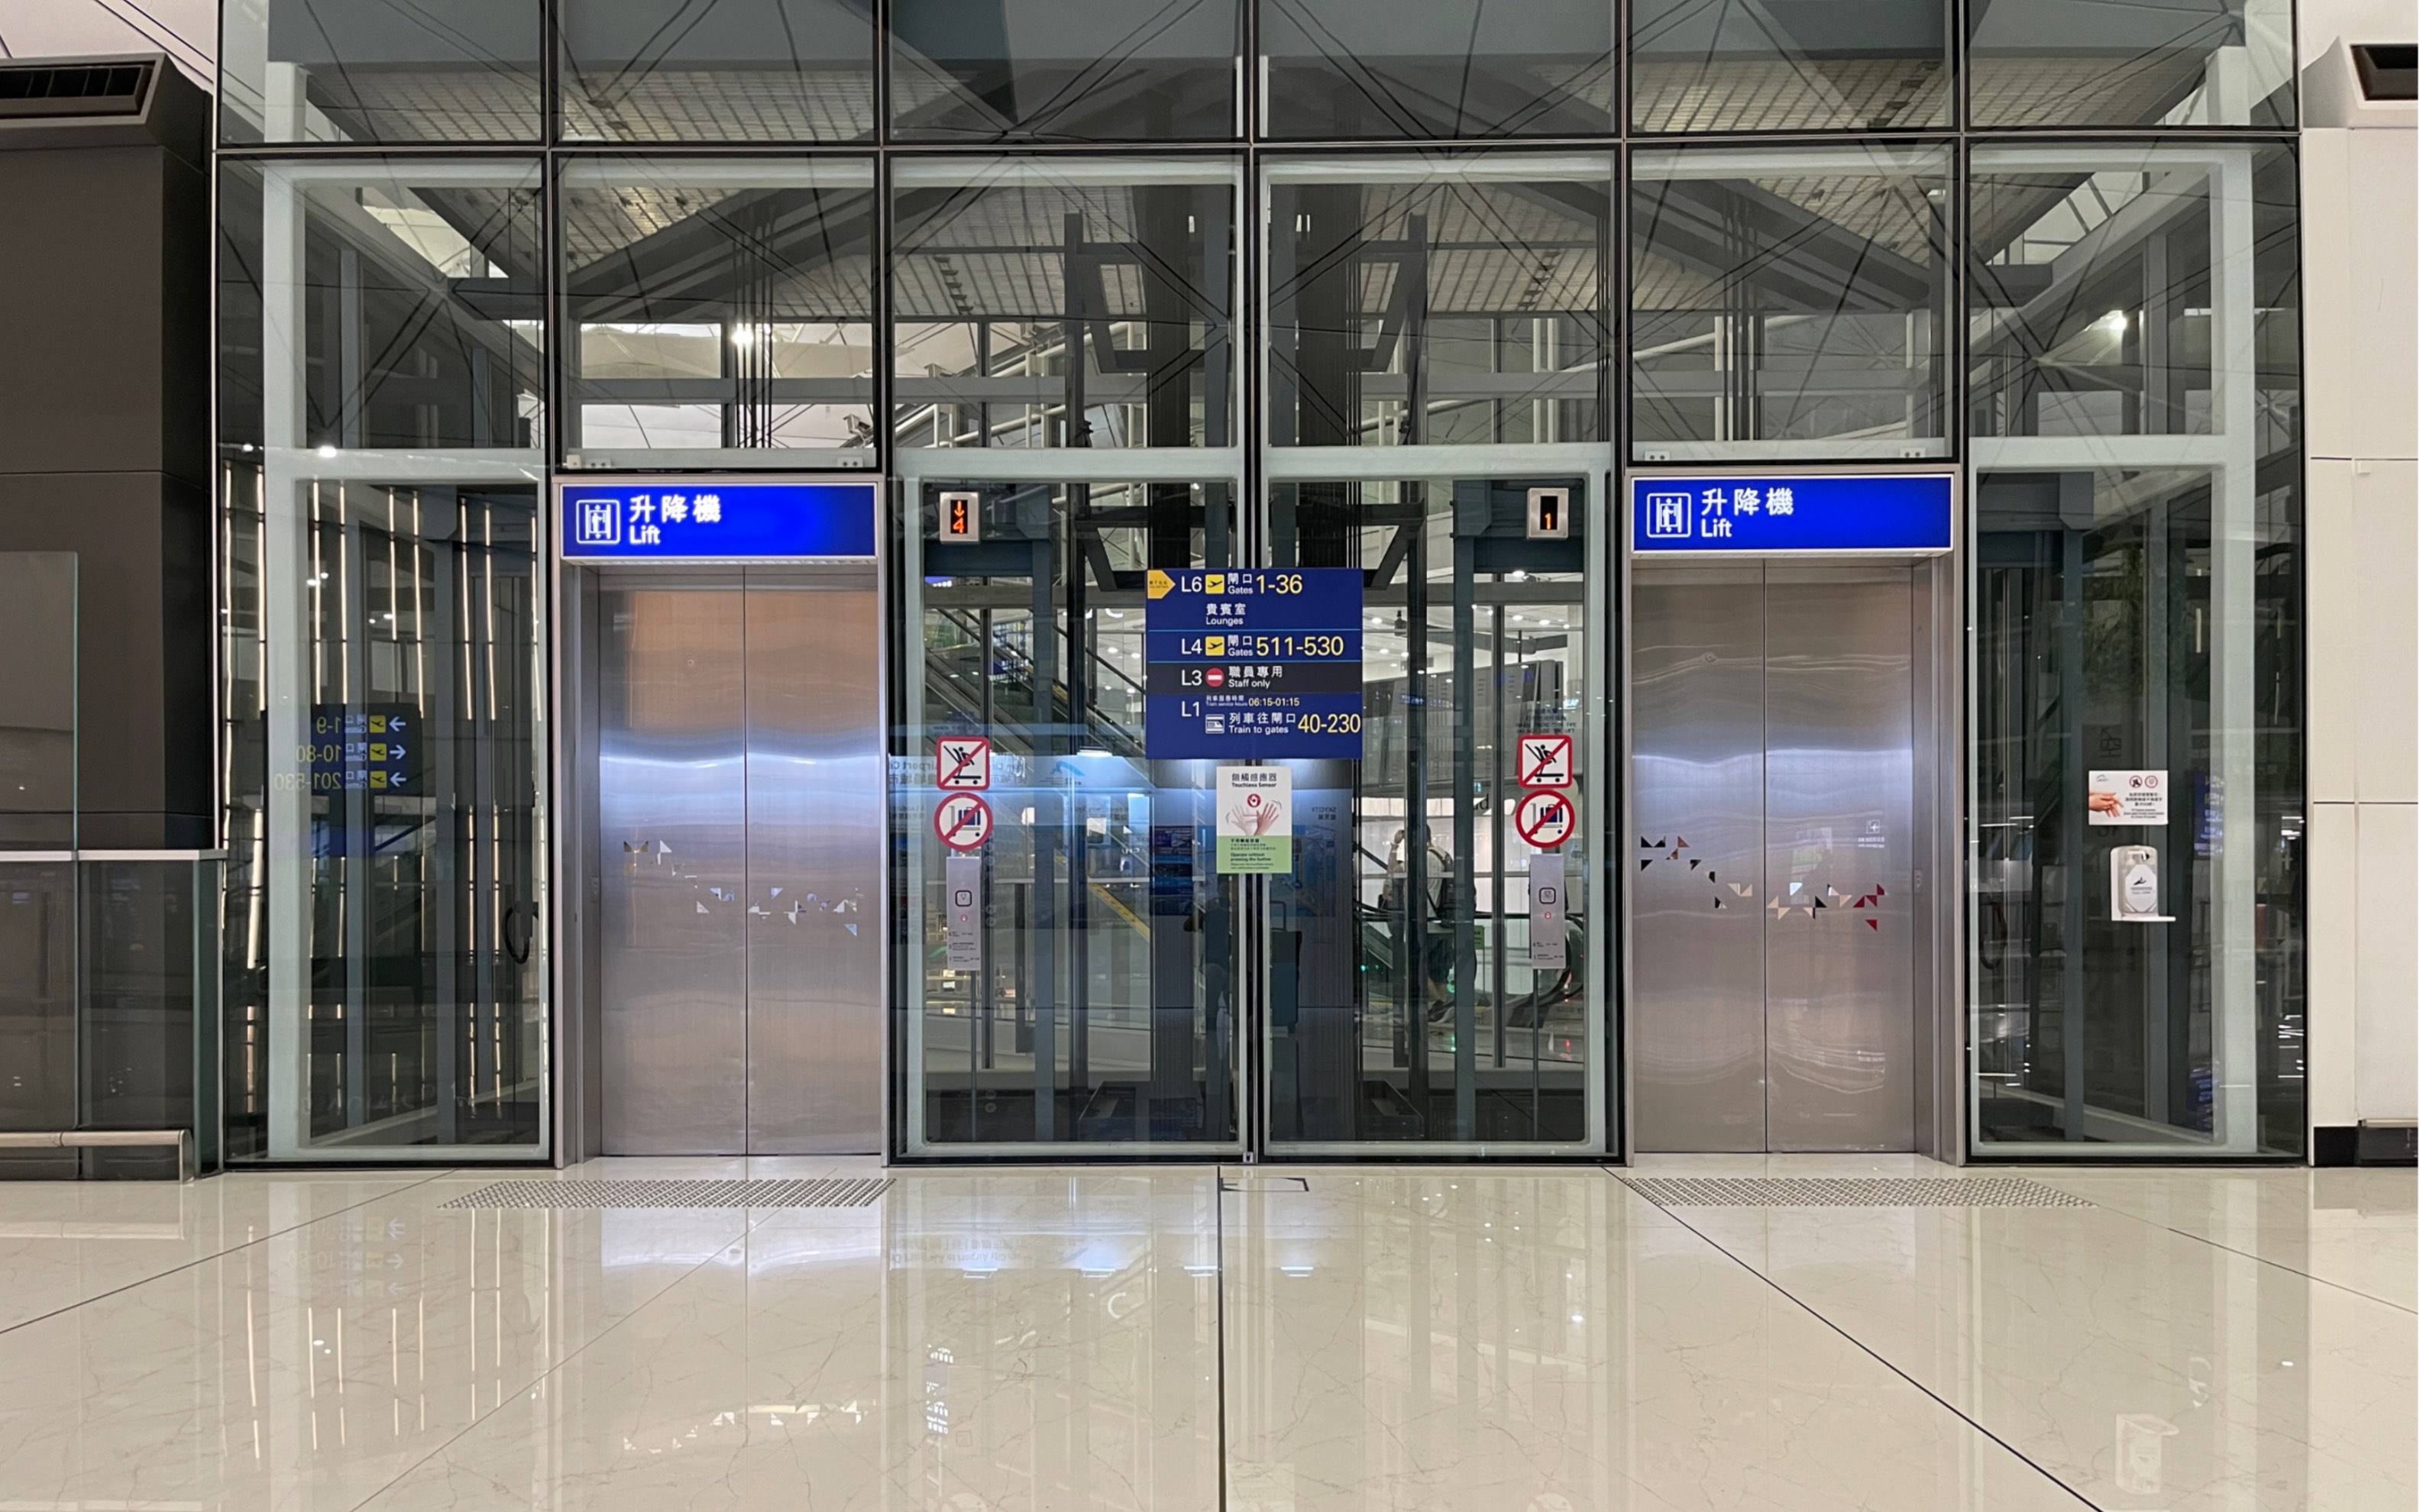 三菱電機株式会社 香港国际机场登机口与捷运站转换电梯日本进口三菱1-6层上行